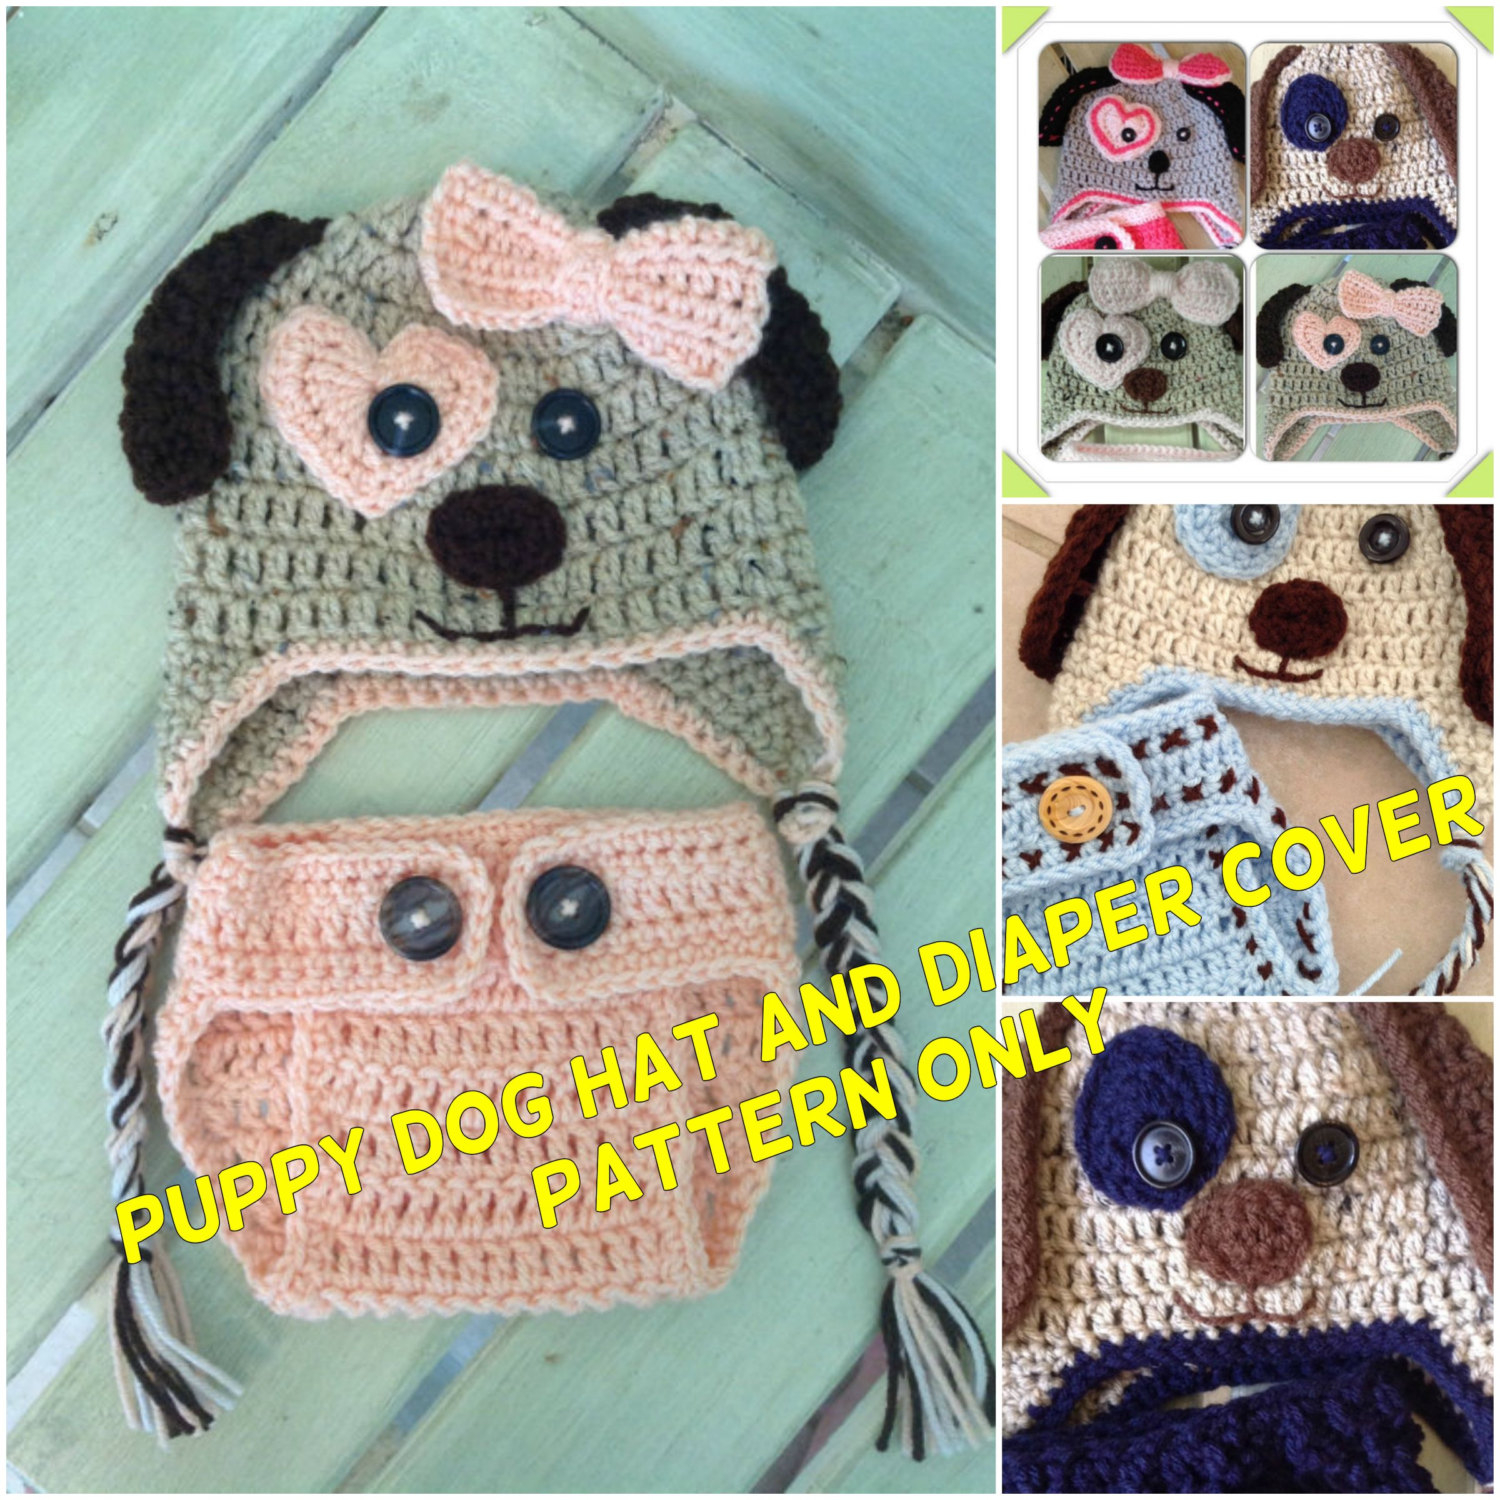 Puppy Dog Crochet Hat Pattern Puppy Dog Hat And Diaper Cover Pattern Only Crochet Hat And Etsy